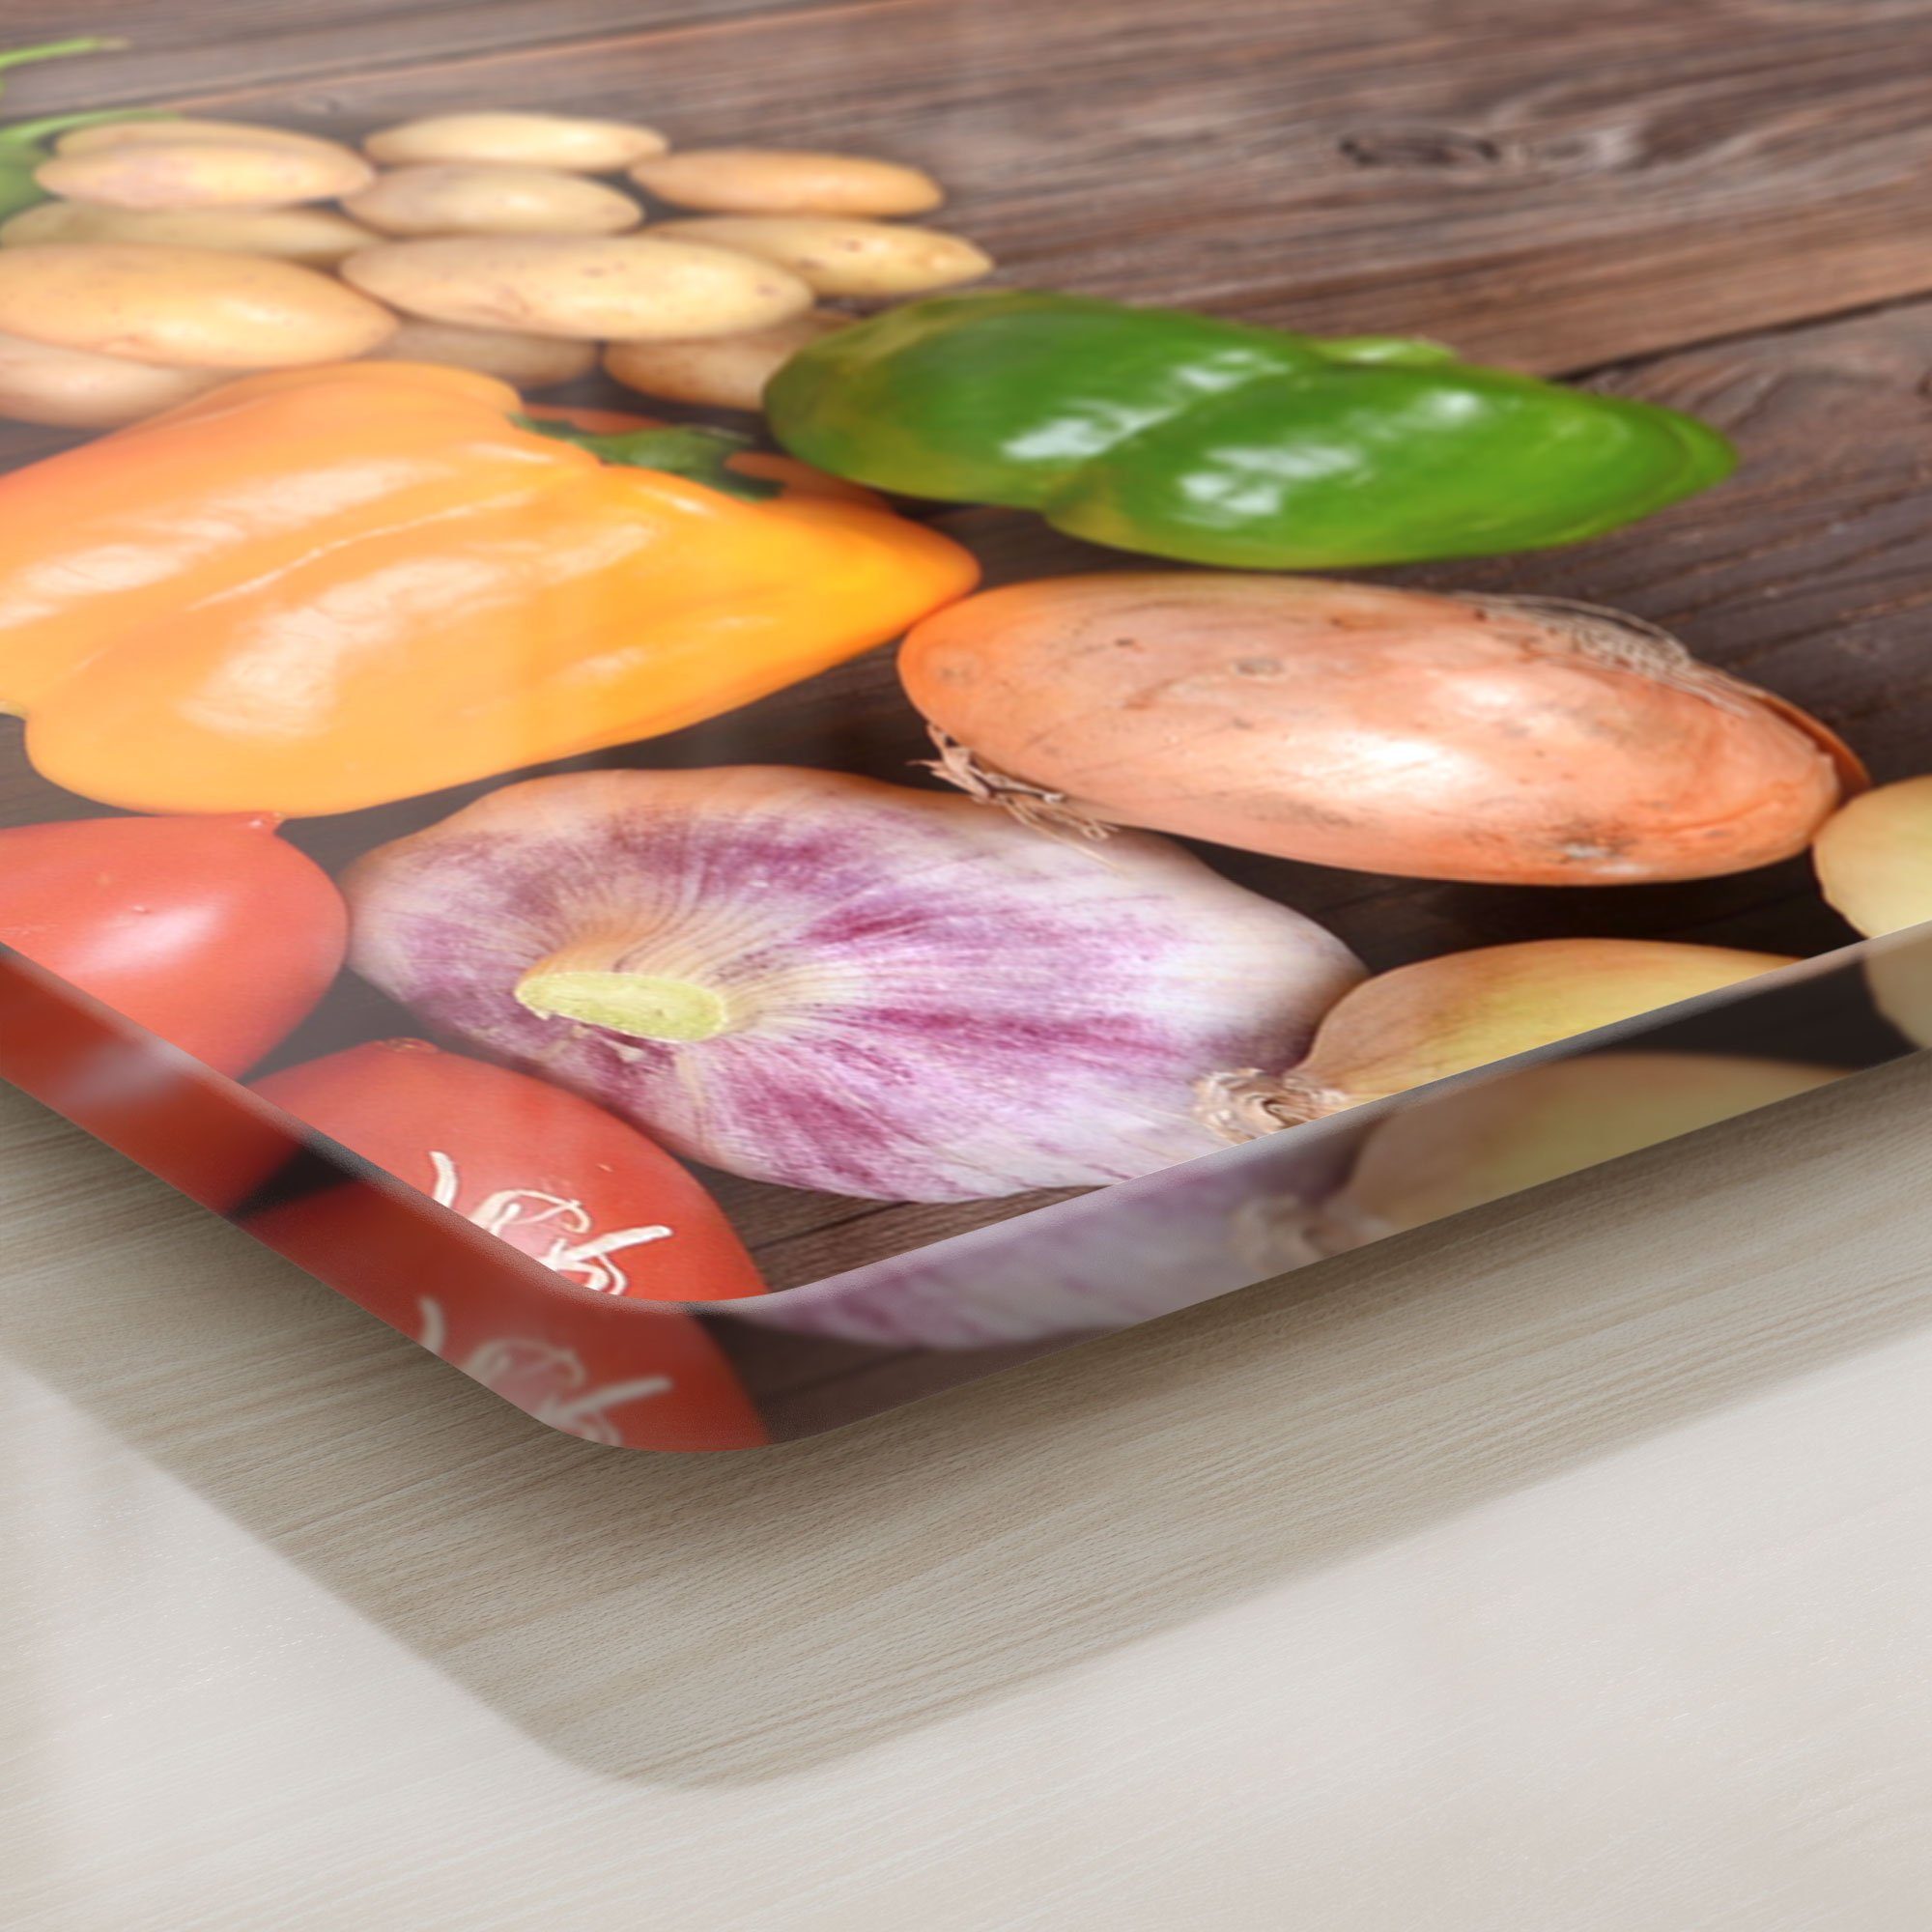 Glas, 'Frisches DEQORI auf Holz', Schneideplatte Gemüse Frühstücksbrett Schneidebrett Platte